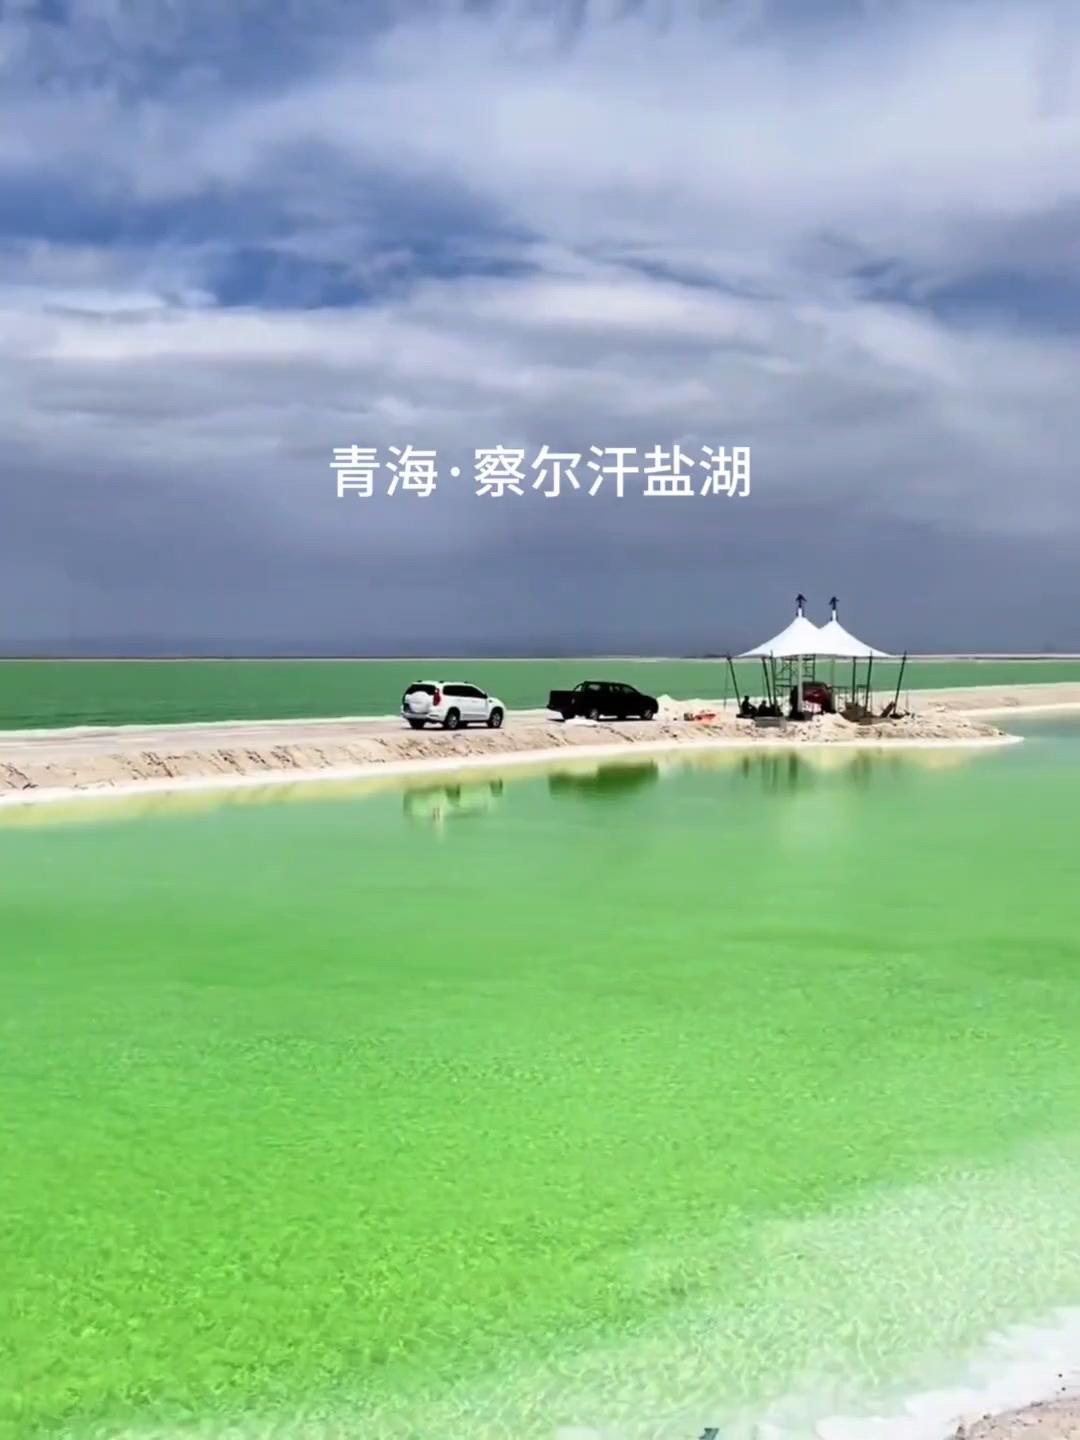 这里是祖国的察尔汗盐湖，独属于大西北的苹果绿。和家人一起去打卡吧！#察尔汗盐湖 #玩转户外 #国内浪